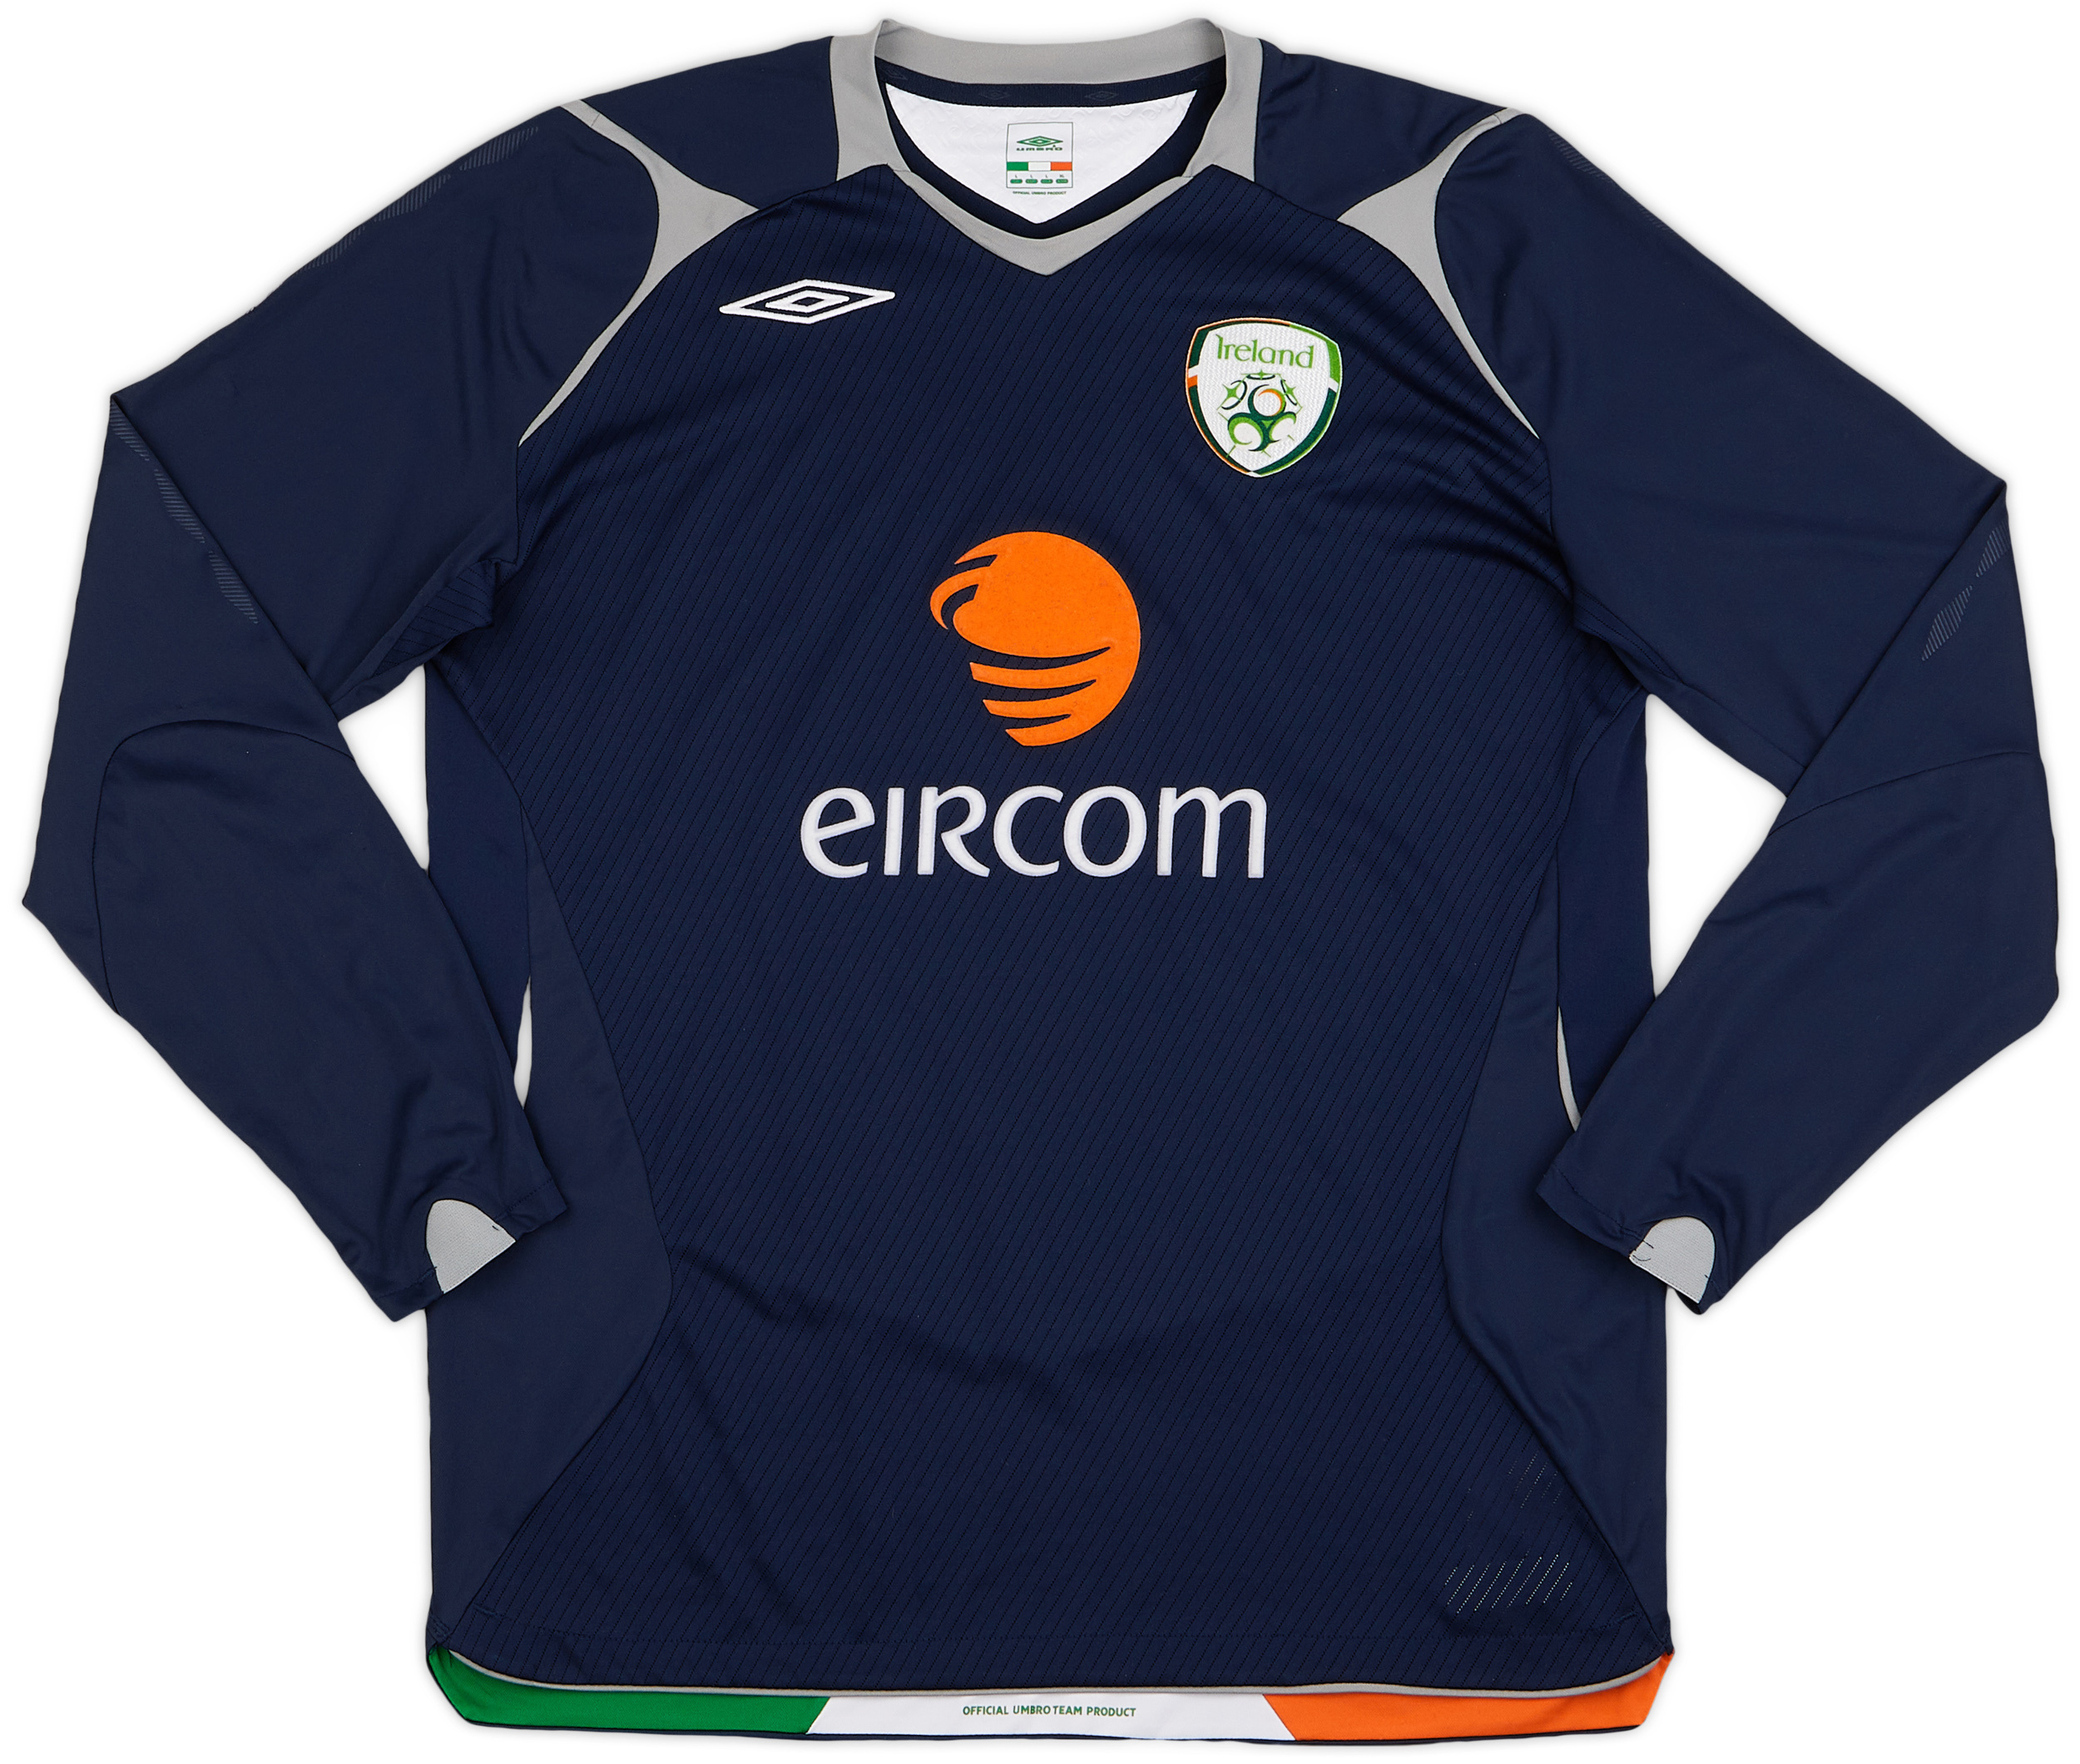 2008-09 Republic of Ireland GK Shirt - 9/10 - ()